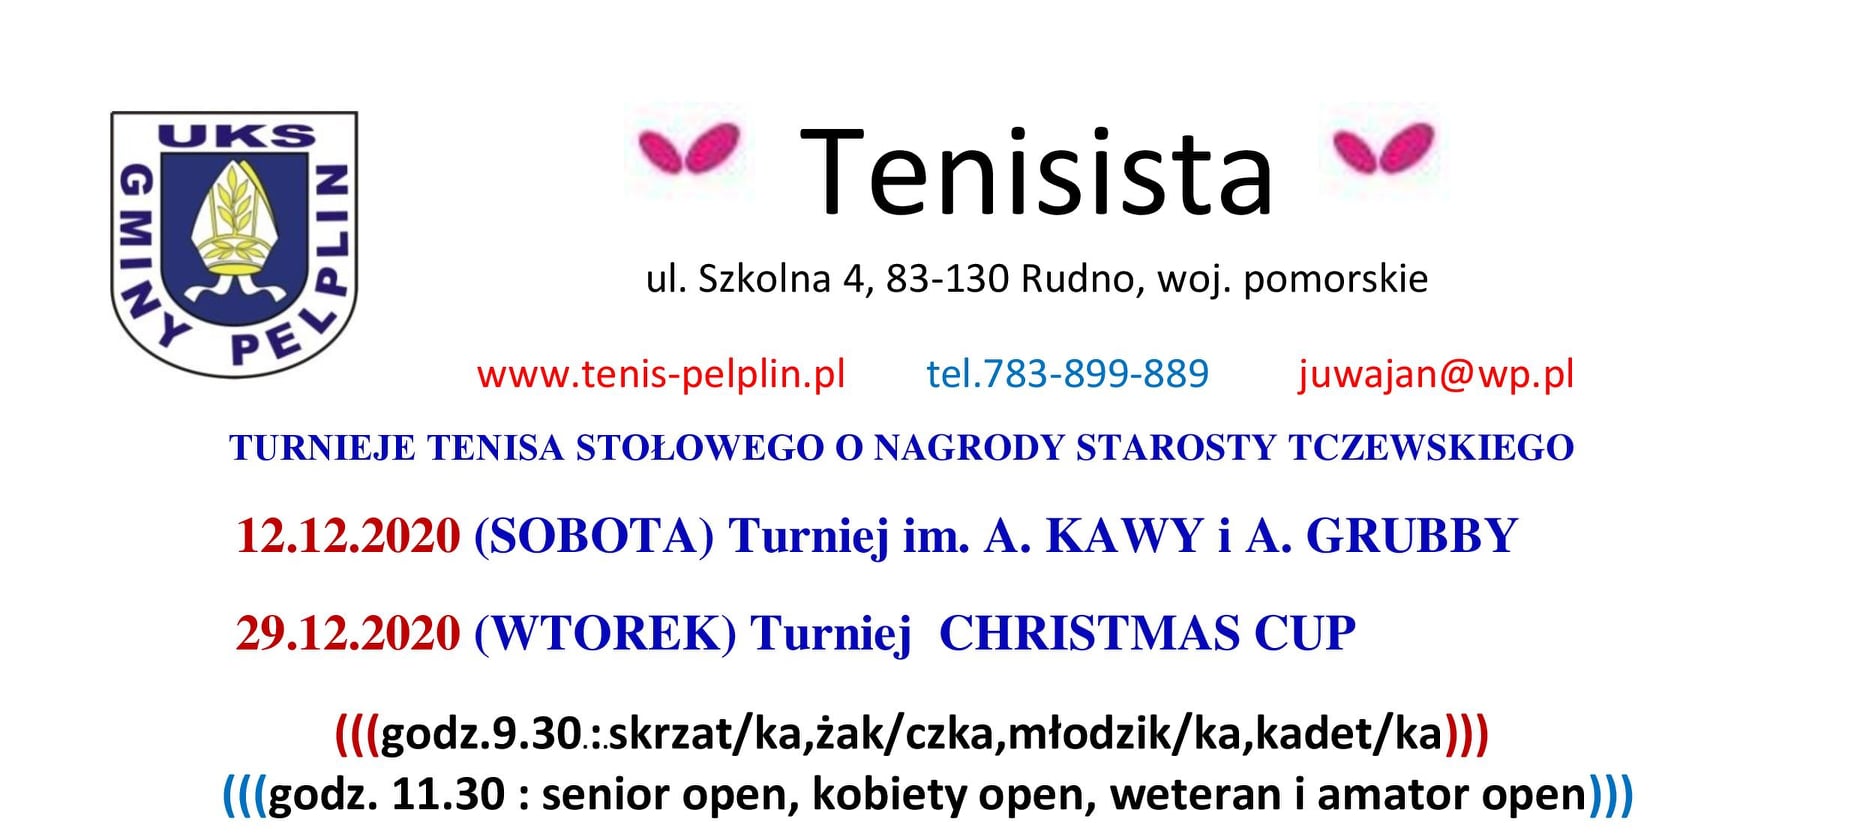 Plakat turnieju Turniej CHRISTMAS CUP- "Tenisista"- O NAGRODY STAROSTY TCZEWSKIEGO